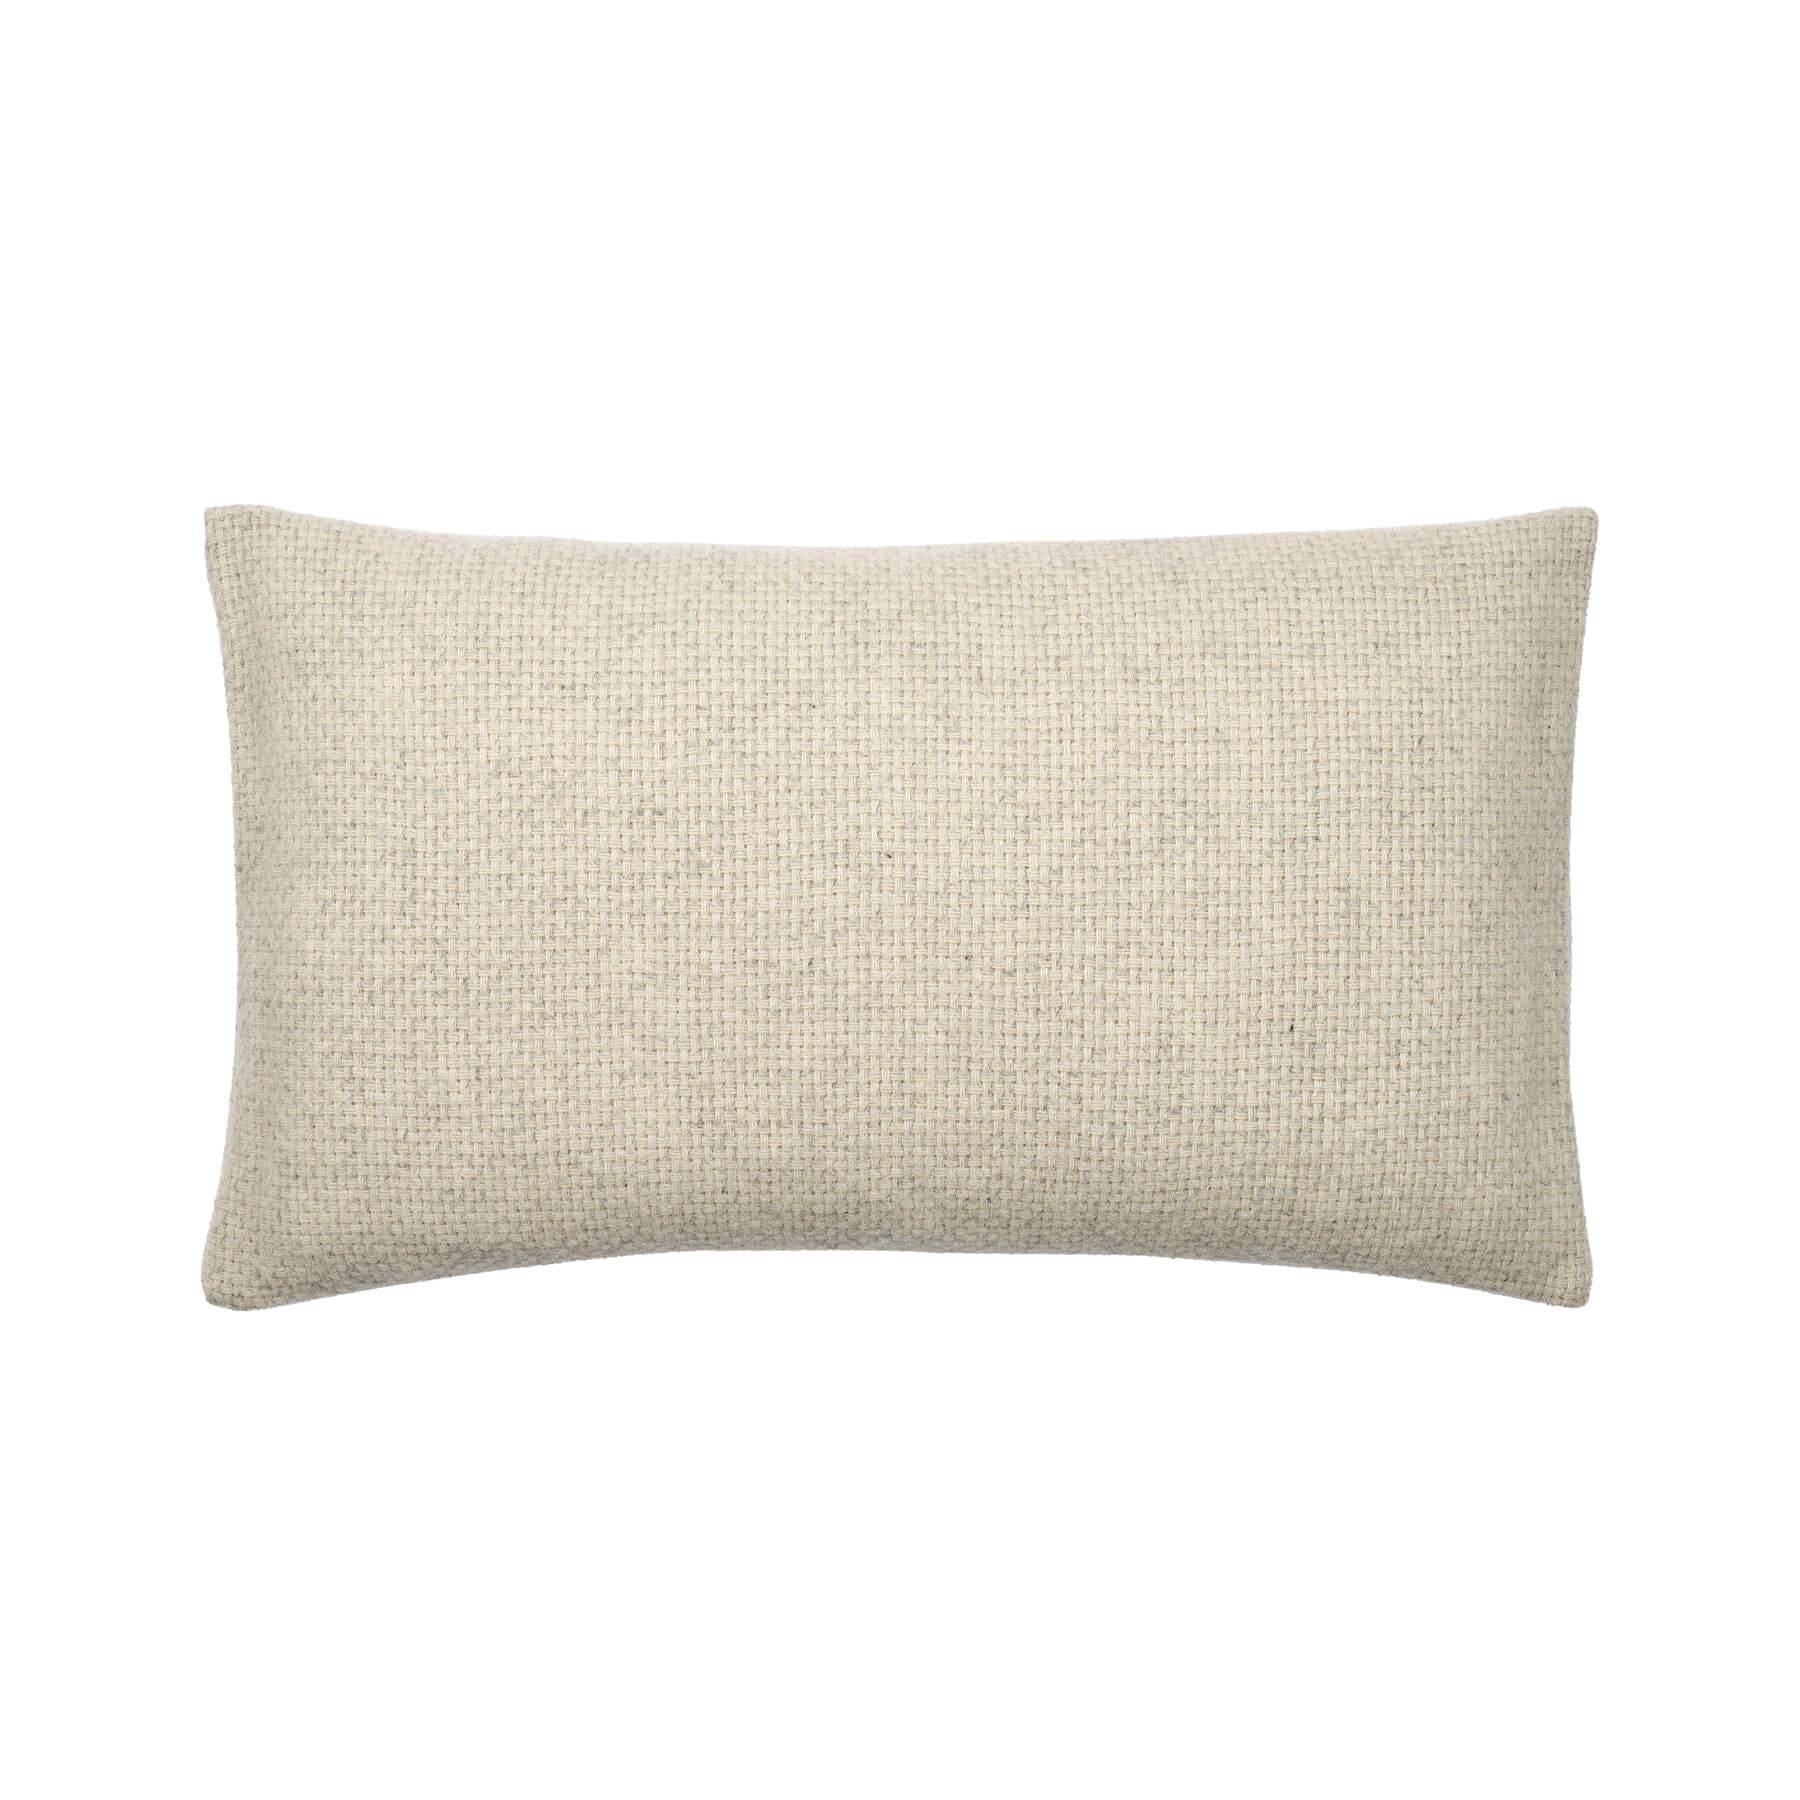 Bolia Freda Cushion 40 X 70cm Light Grey Wool